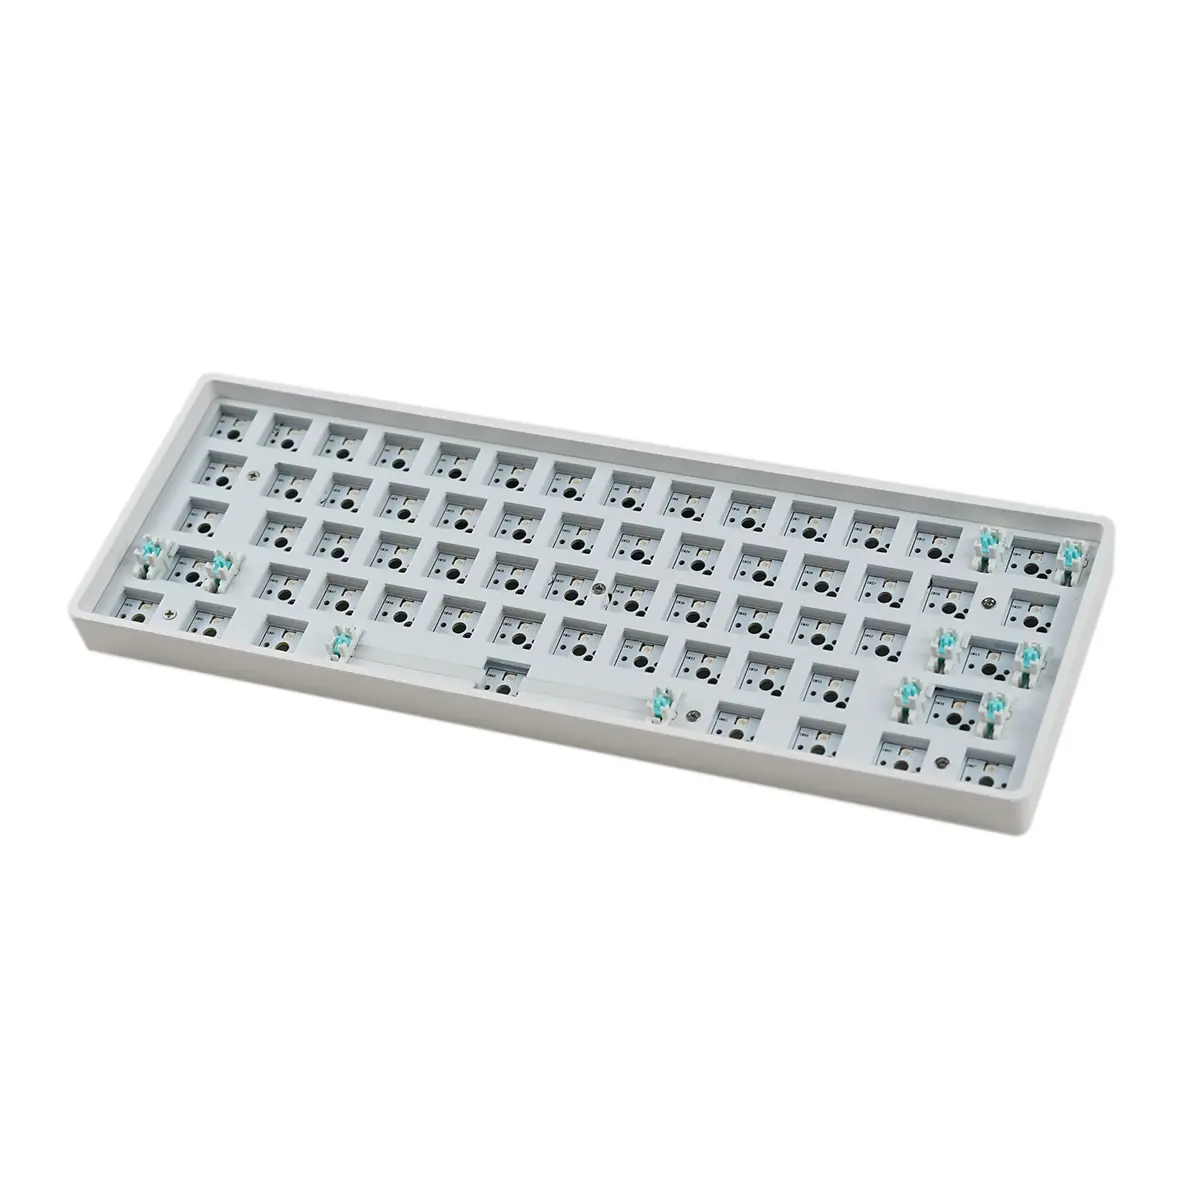 TECH w TECH MK61 mekanik klavye kiti 61 tuşları RGB Bluetooth kablosuz 3 modu çalışırken değiştirilebilir 60% kompakt Mini taşınabilir klavye